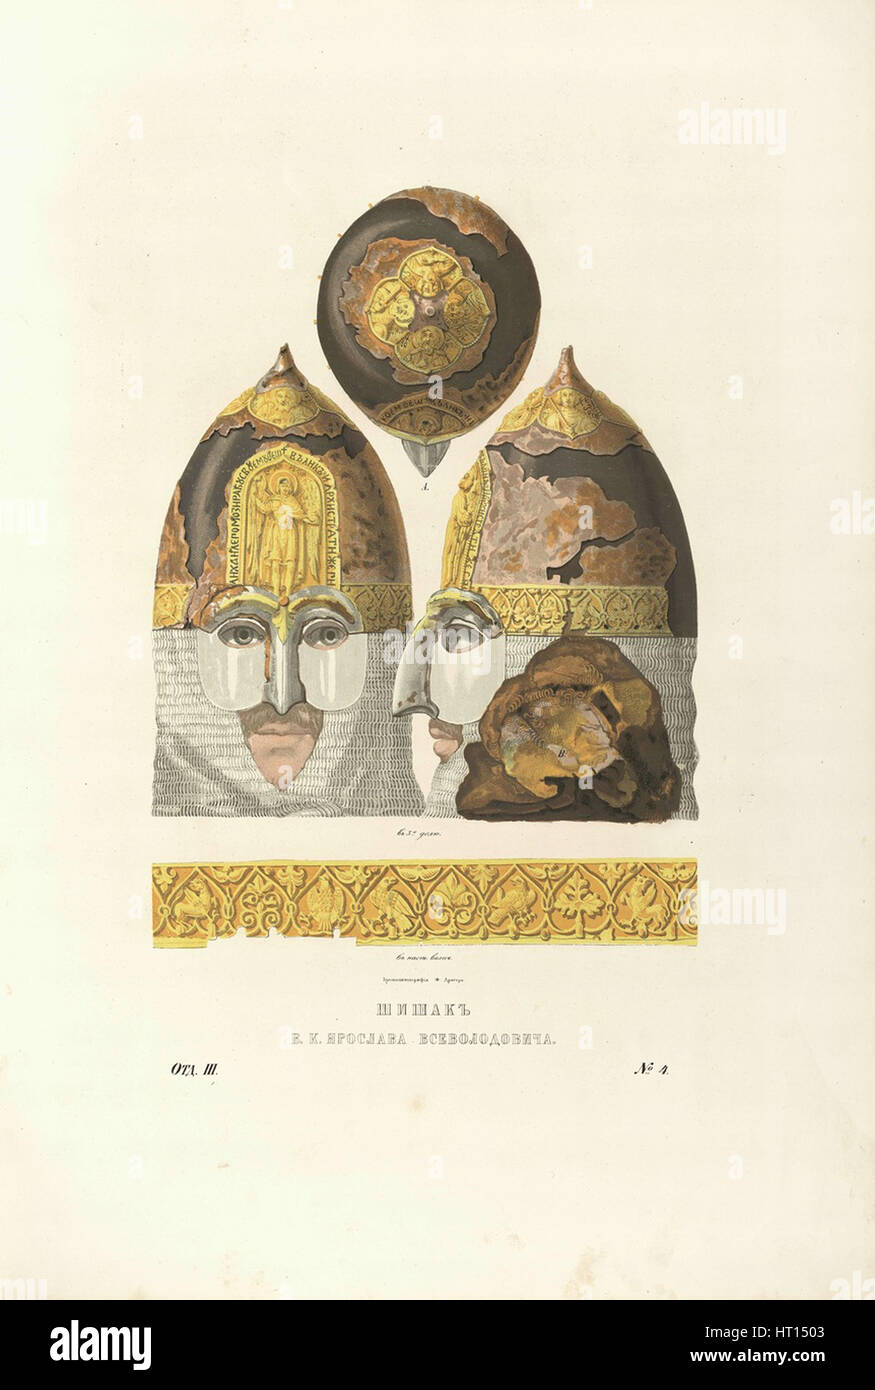 Helmet of Grand Prince Yaroslav II Vsevolodovich, 1840s. Artist: Solntsev, Fyodor Grigoryevich (1801-1892) Stock Photo